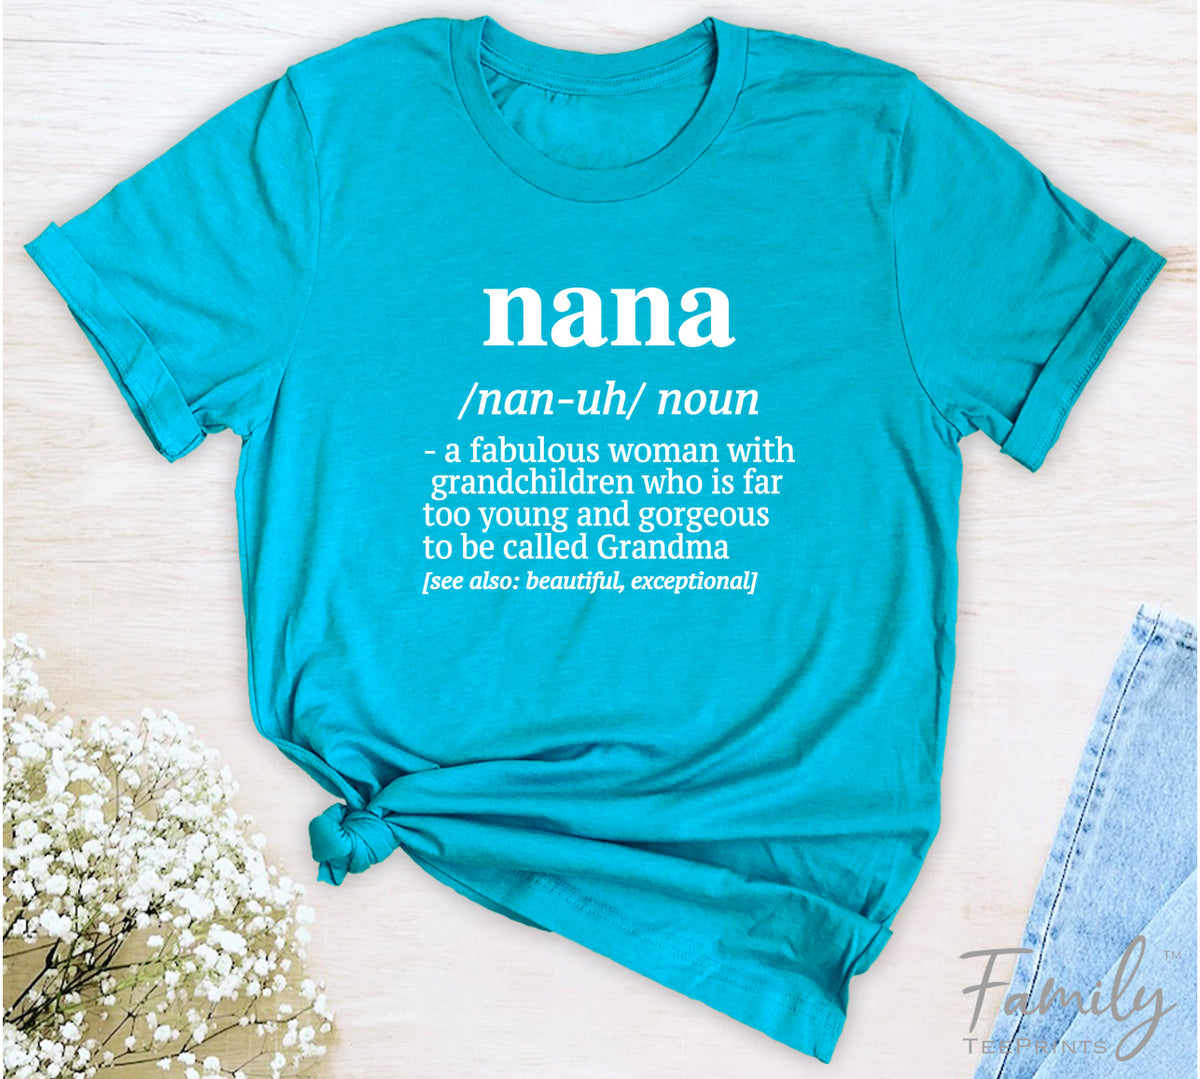 Nana A Fabulous Woman With Grandchildren... - Unisex T-shirt - Nana Shirt - Gift for Nana